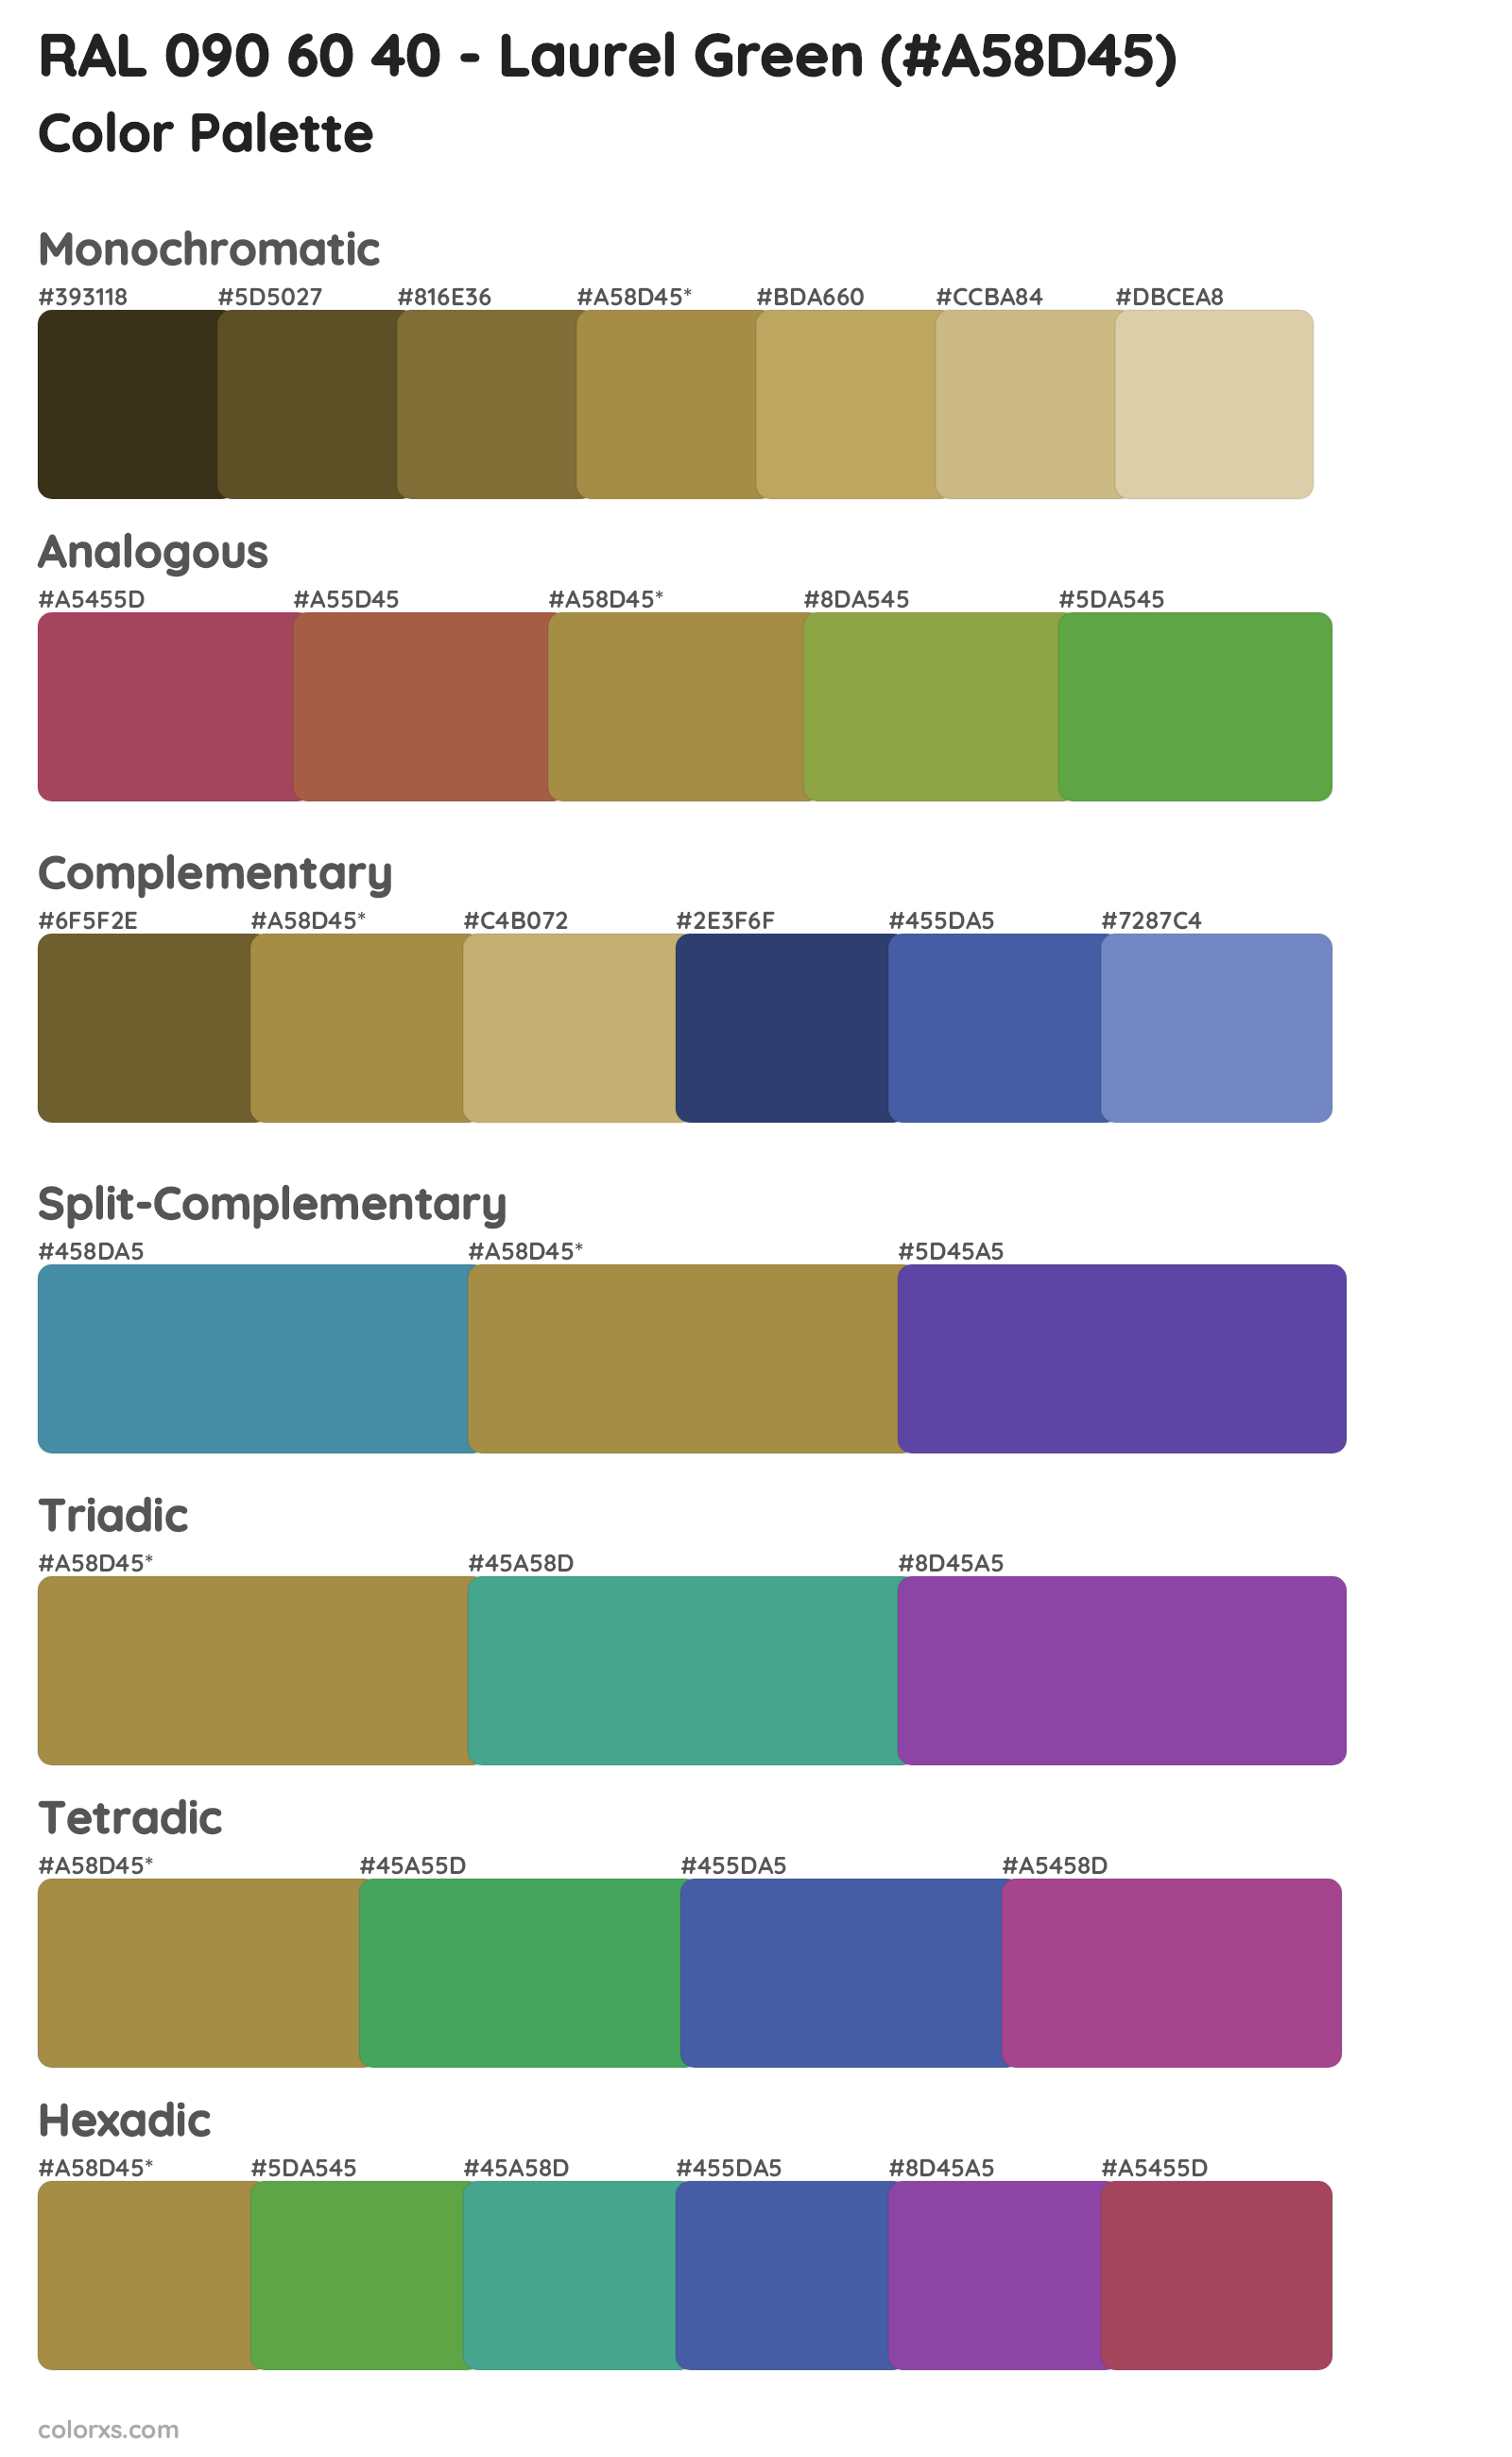 RAL 090 60 40 - Laurel Green Color Scheme Palettes